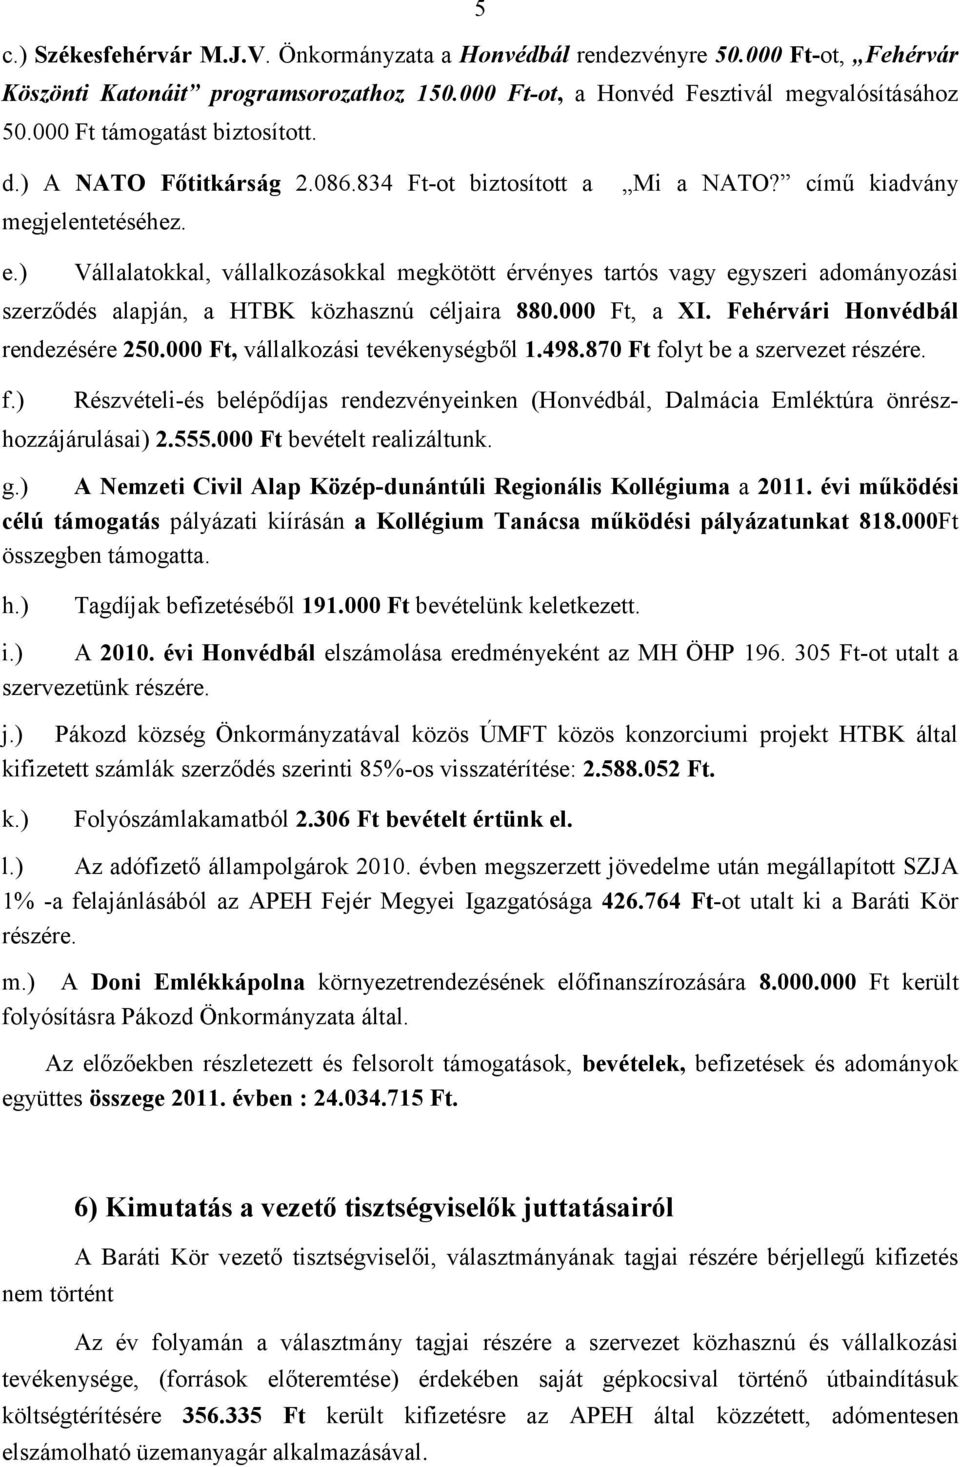 ) Vállalatokkal, vállalkozásokkal megkötött érvényes tartós vagy egyszeri adományozási szerződés alapján, a HTBK közhasznú céljaira 880.000 Ft, a XI. Fehérvári Honvédbál rendezésére 250.